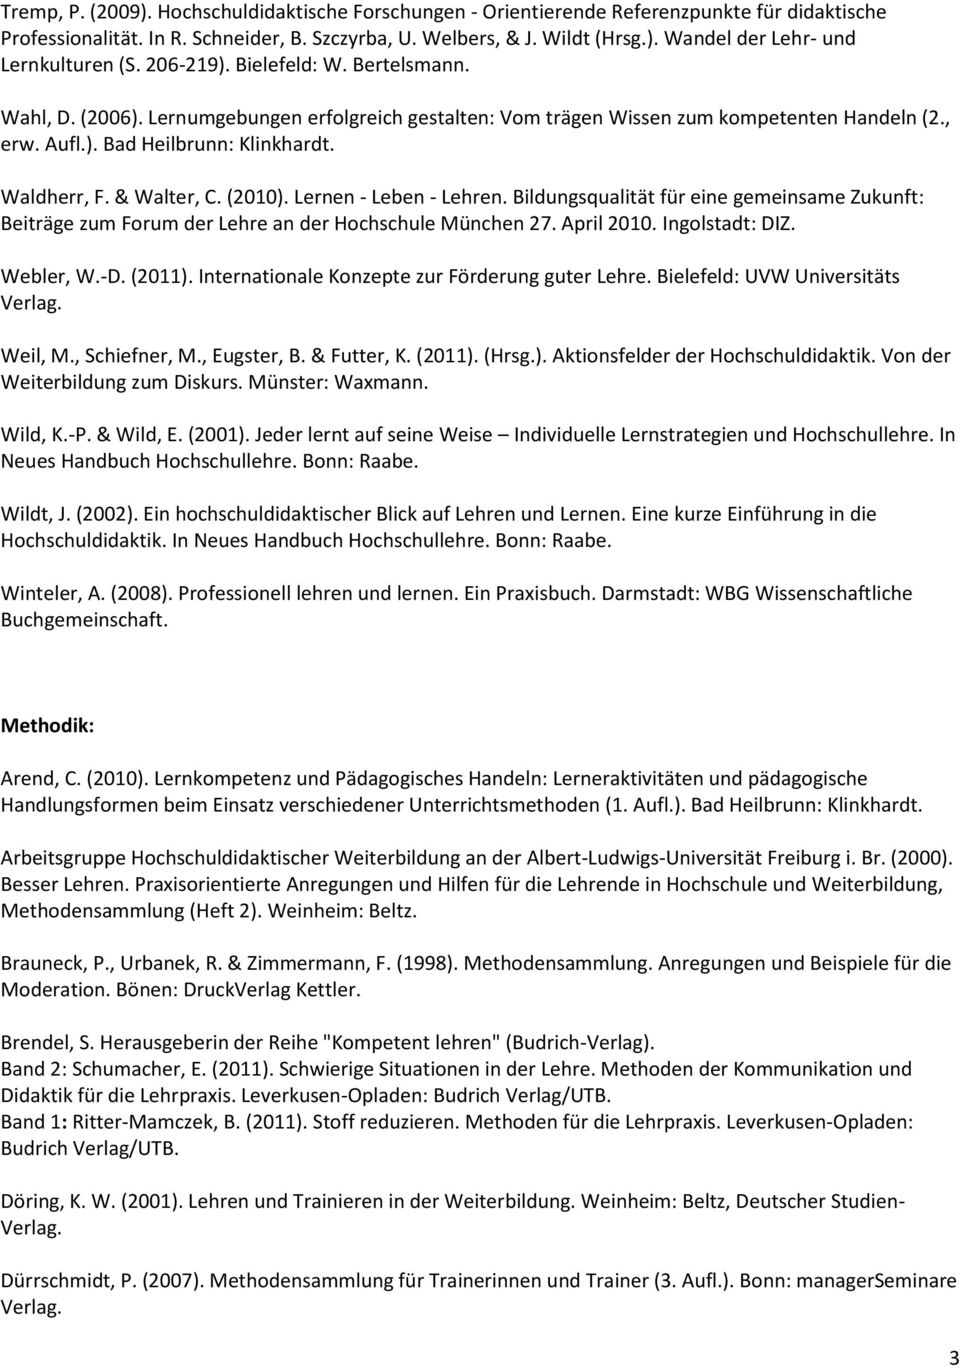 & Walter, C. (2010). Lernen - Leben - Lehren. Bildungsqualität für eine gemeinsame Zukunft: Beiträge zum Forum der Lehre an der Hochschule München 27. April 2010. Ingolstadt: DIZ. Webler, W.-D.